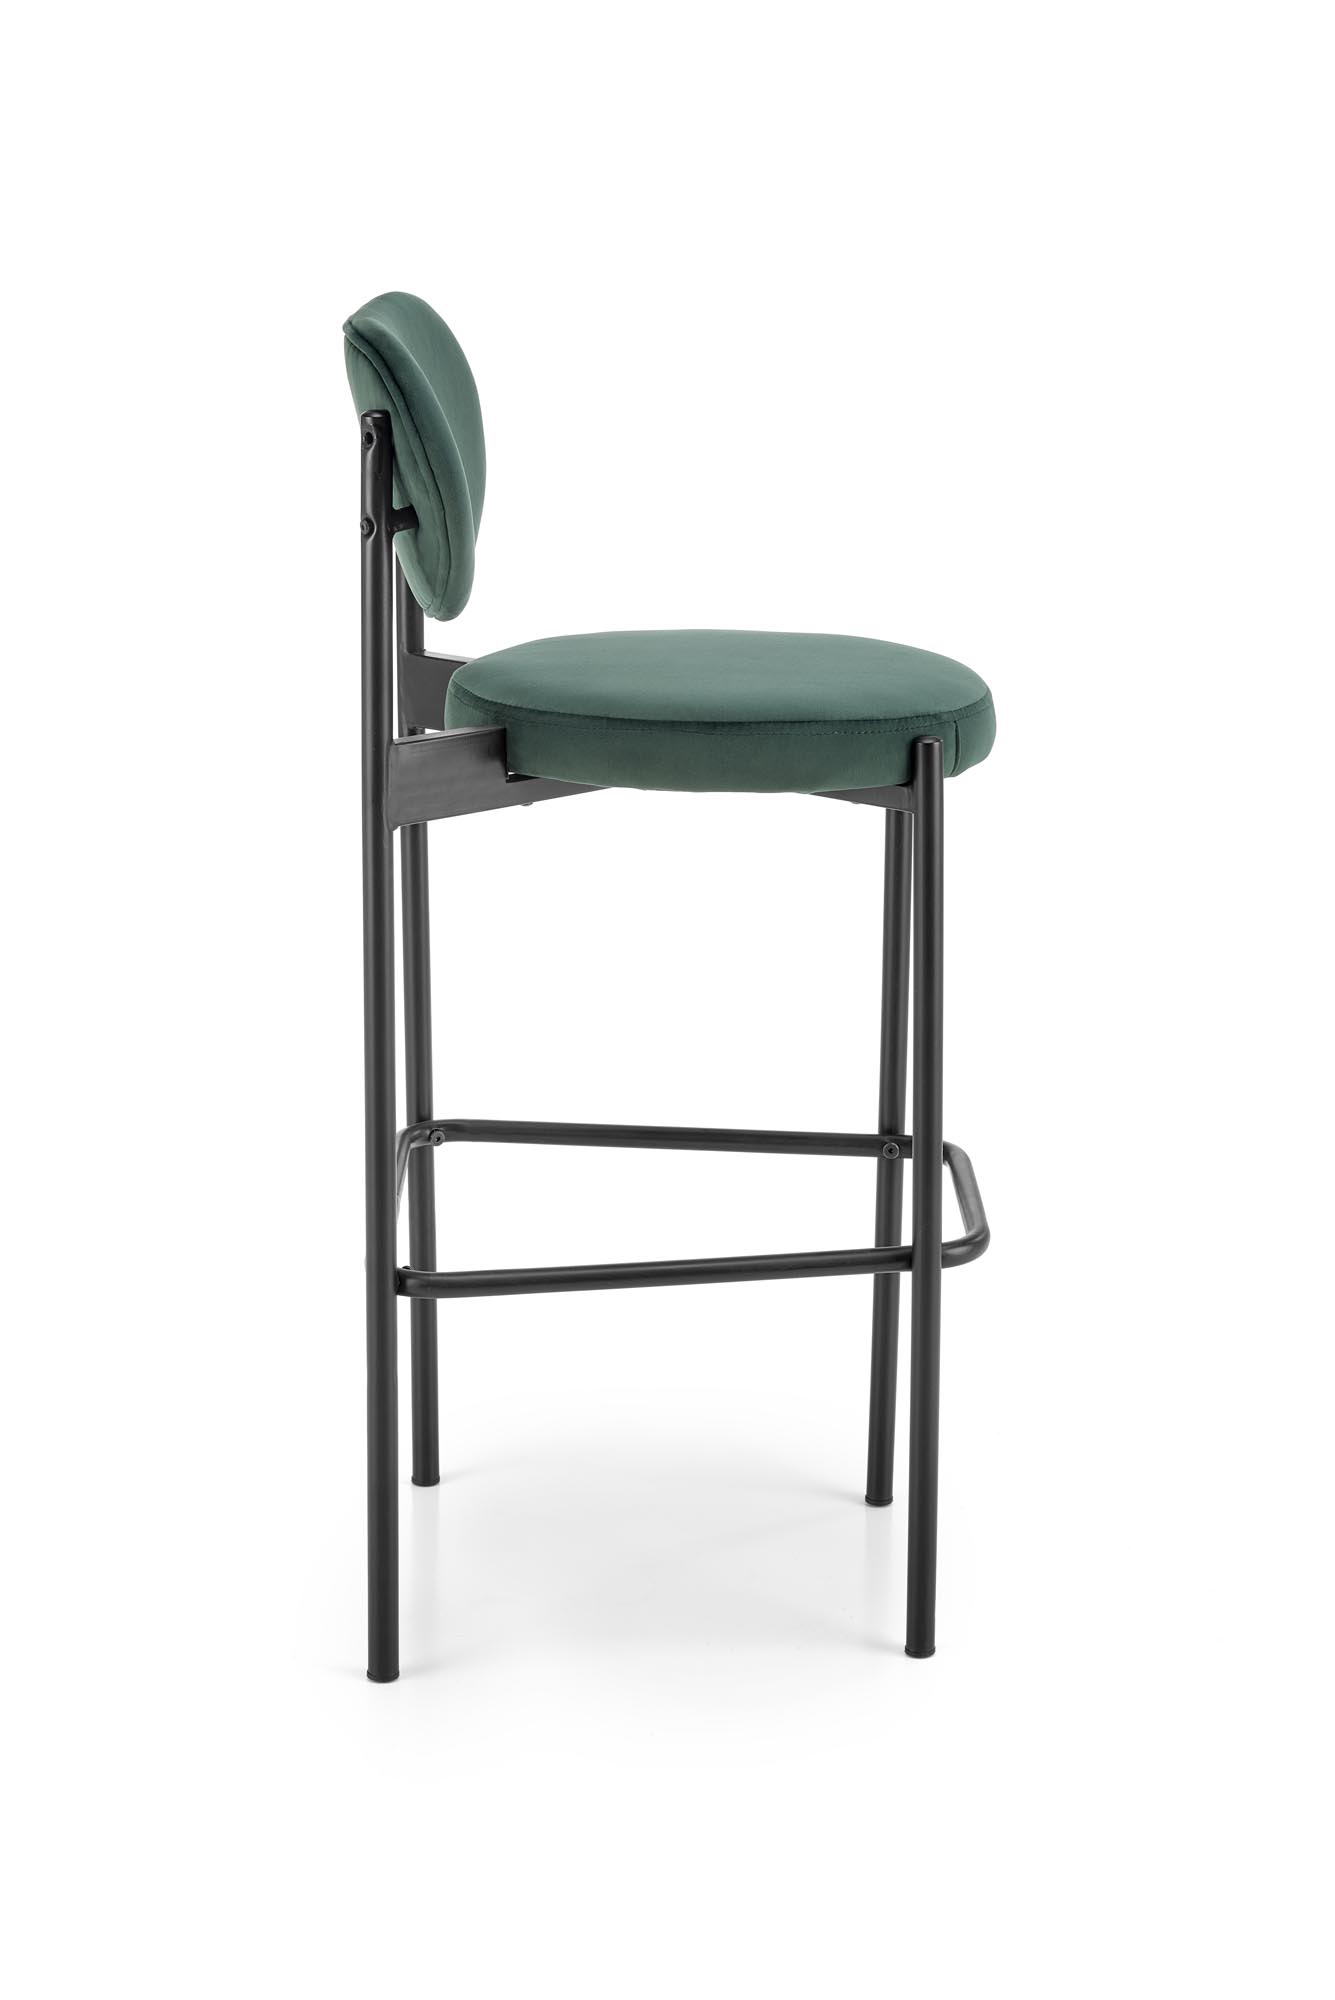 H108 Barová židle tmavý Zelený Barová židle čalouněná h108 - tmavá Zeleň